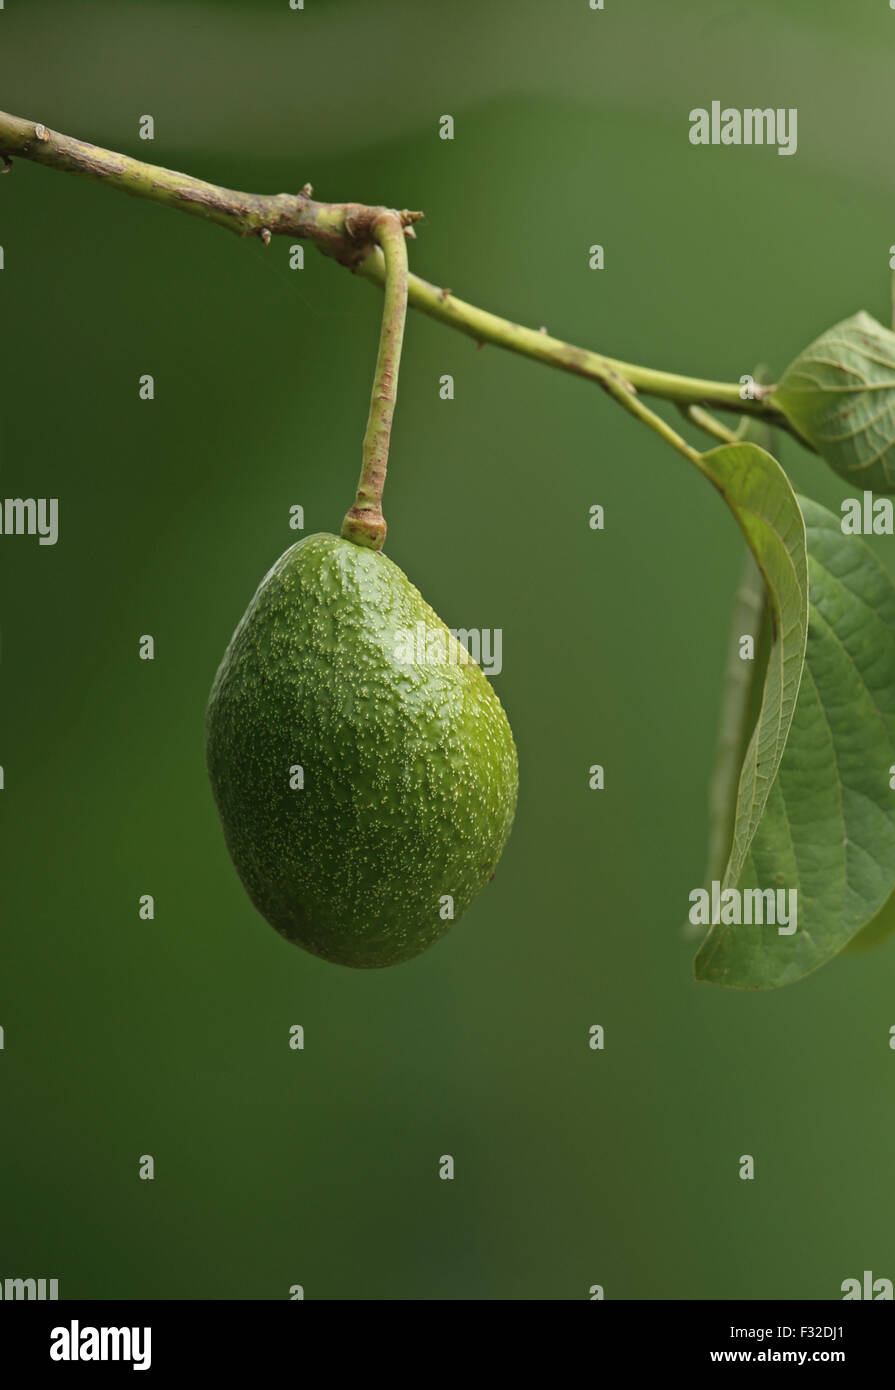 Avocat (Persea americana) close-up de fruits, Darien, Panama, Avril Banque D'Images